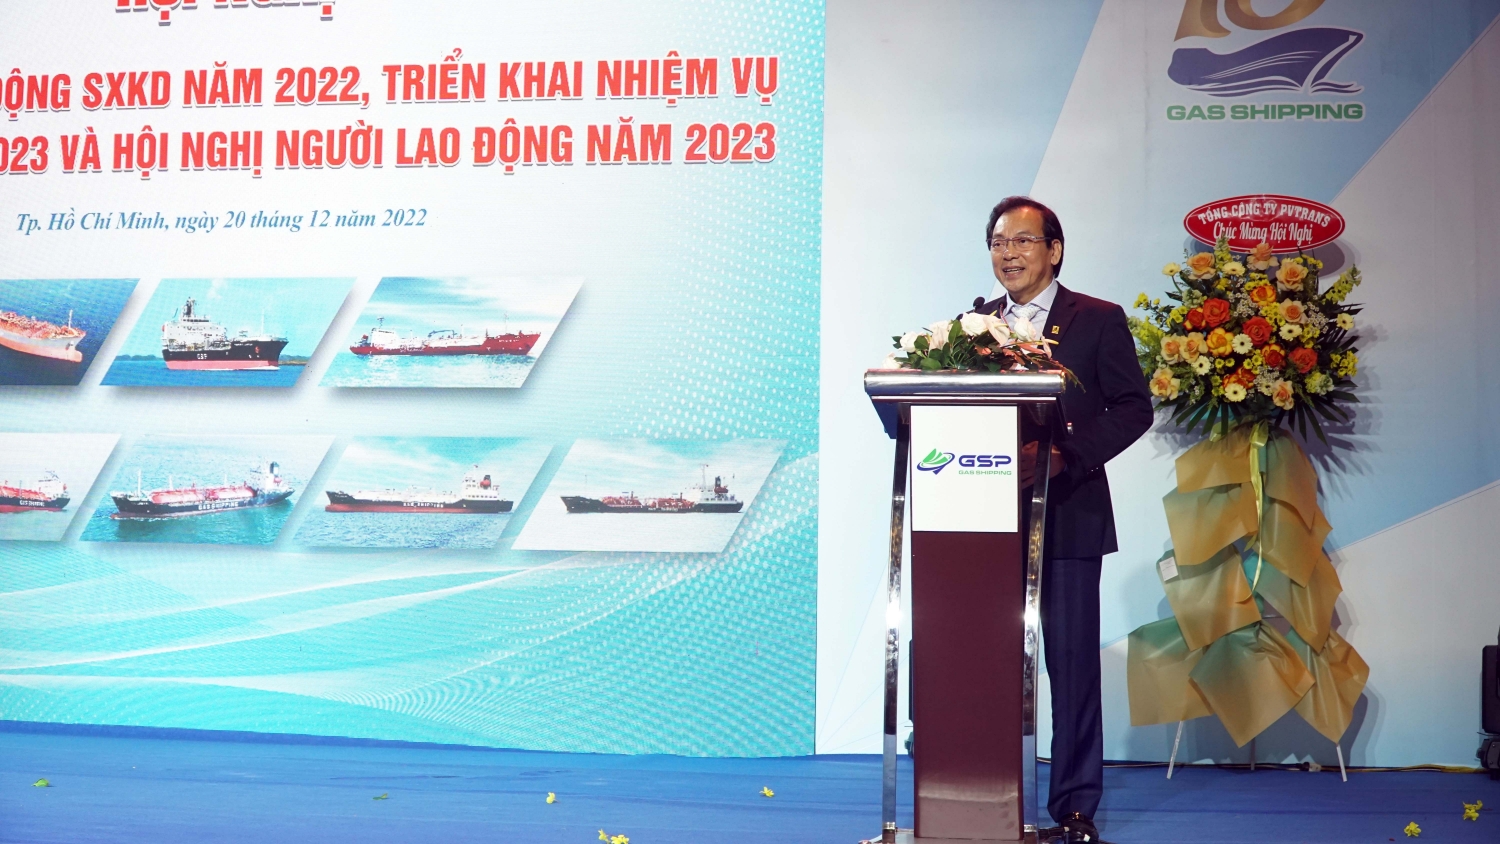 ông Nguyễn Ngọc Anh - Phó Tổng Giám đốc Công ty CP Lọc hóa dầu Bình Sơn, nguyên Giám đốc Gas Shipping 